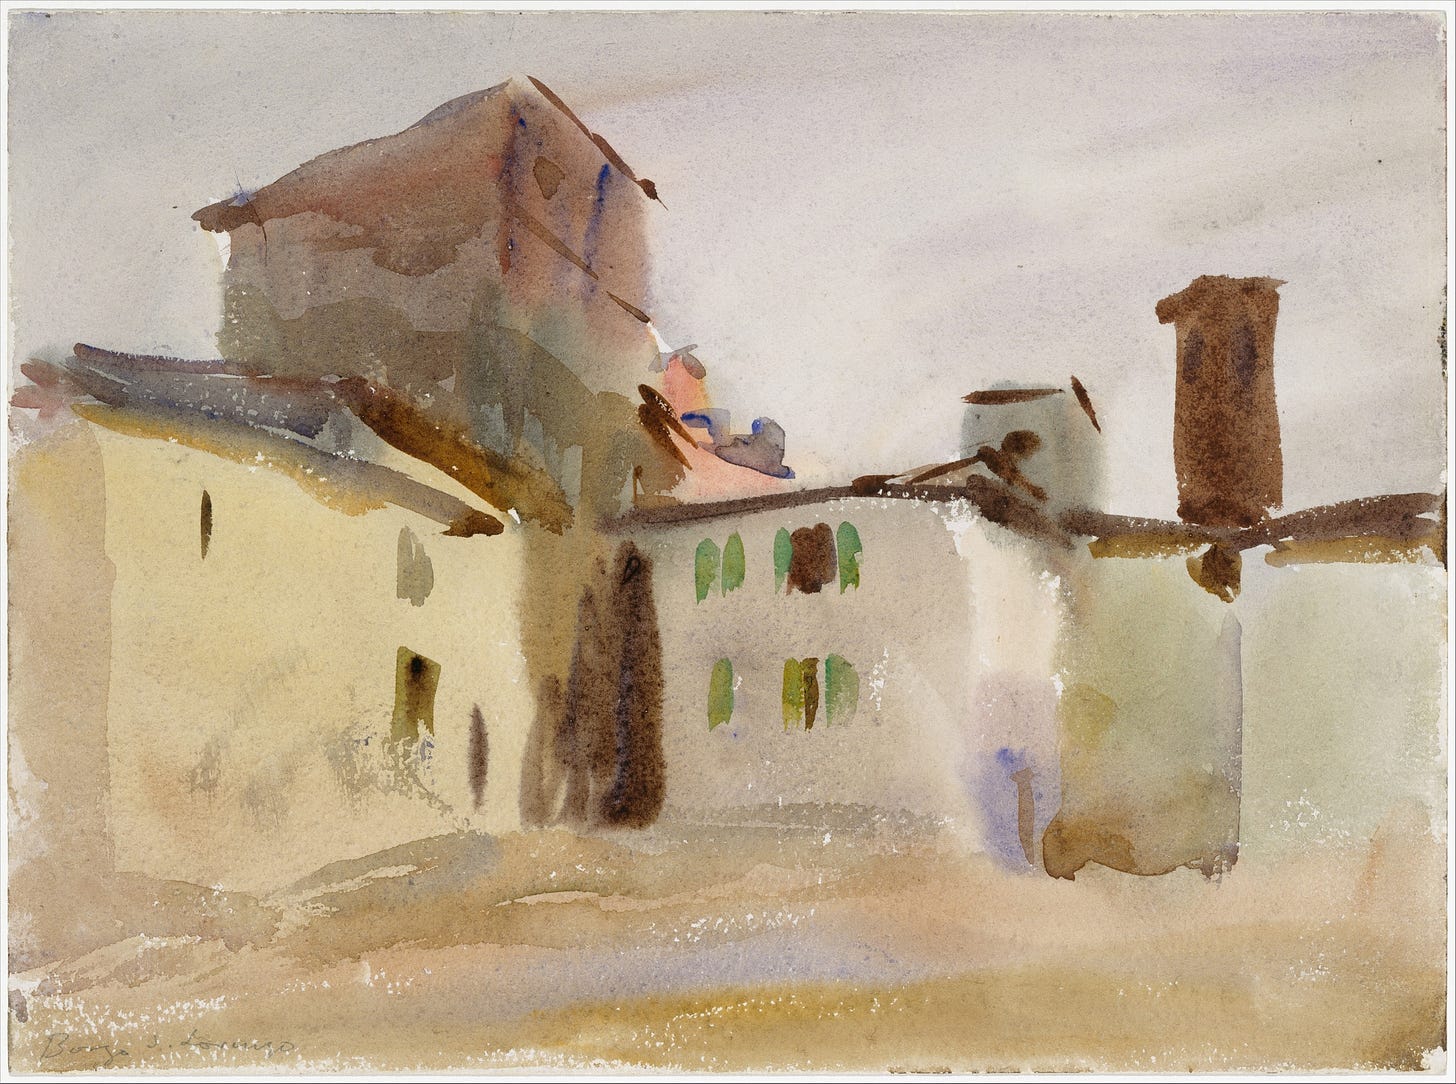 Borgo San Lorenzo (circa 1910)